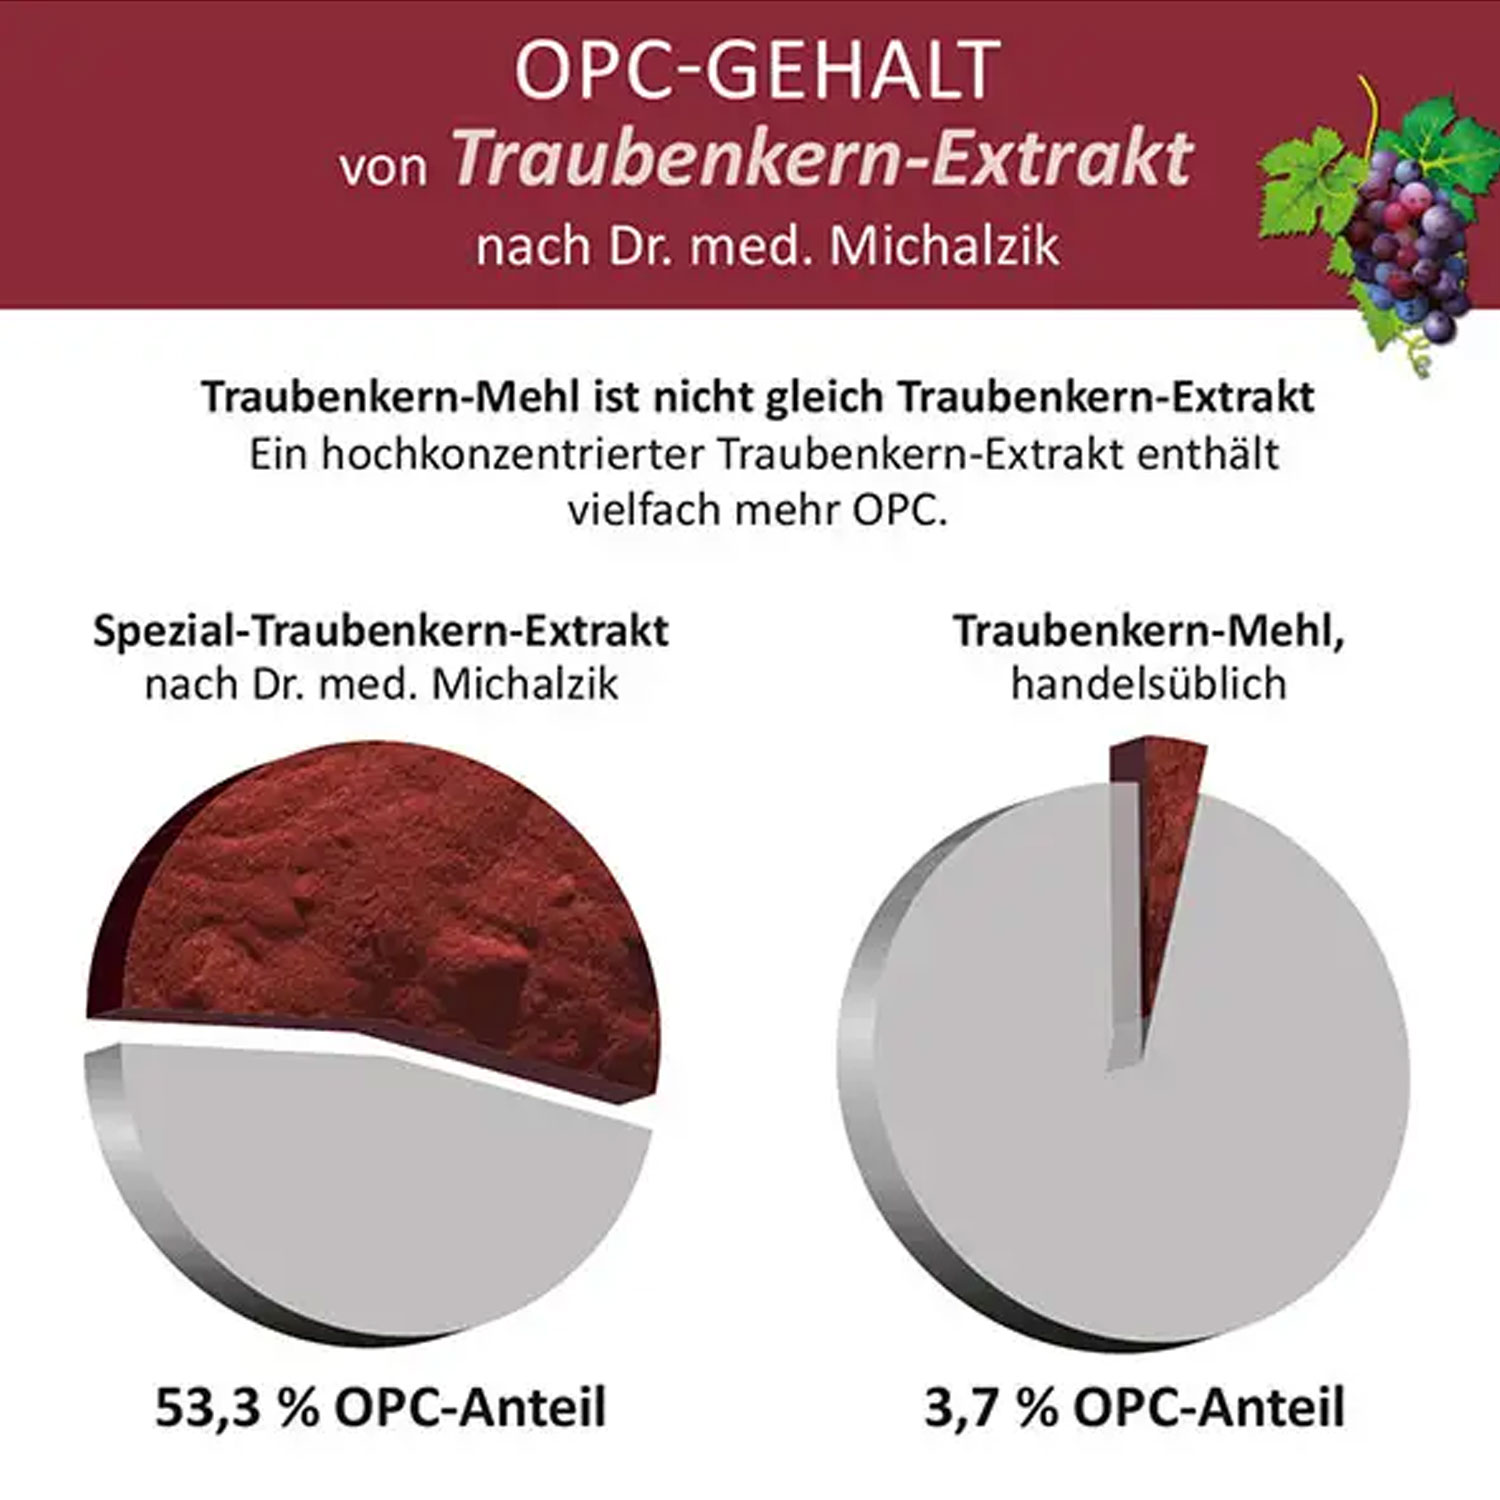 Vergleich Traubenkernmehl - OPC